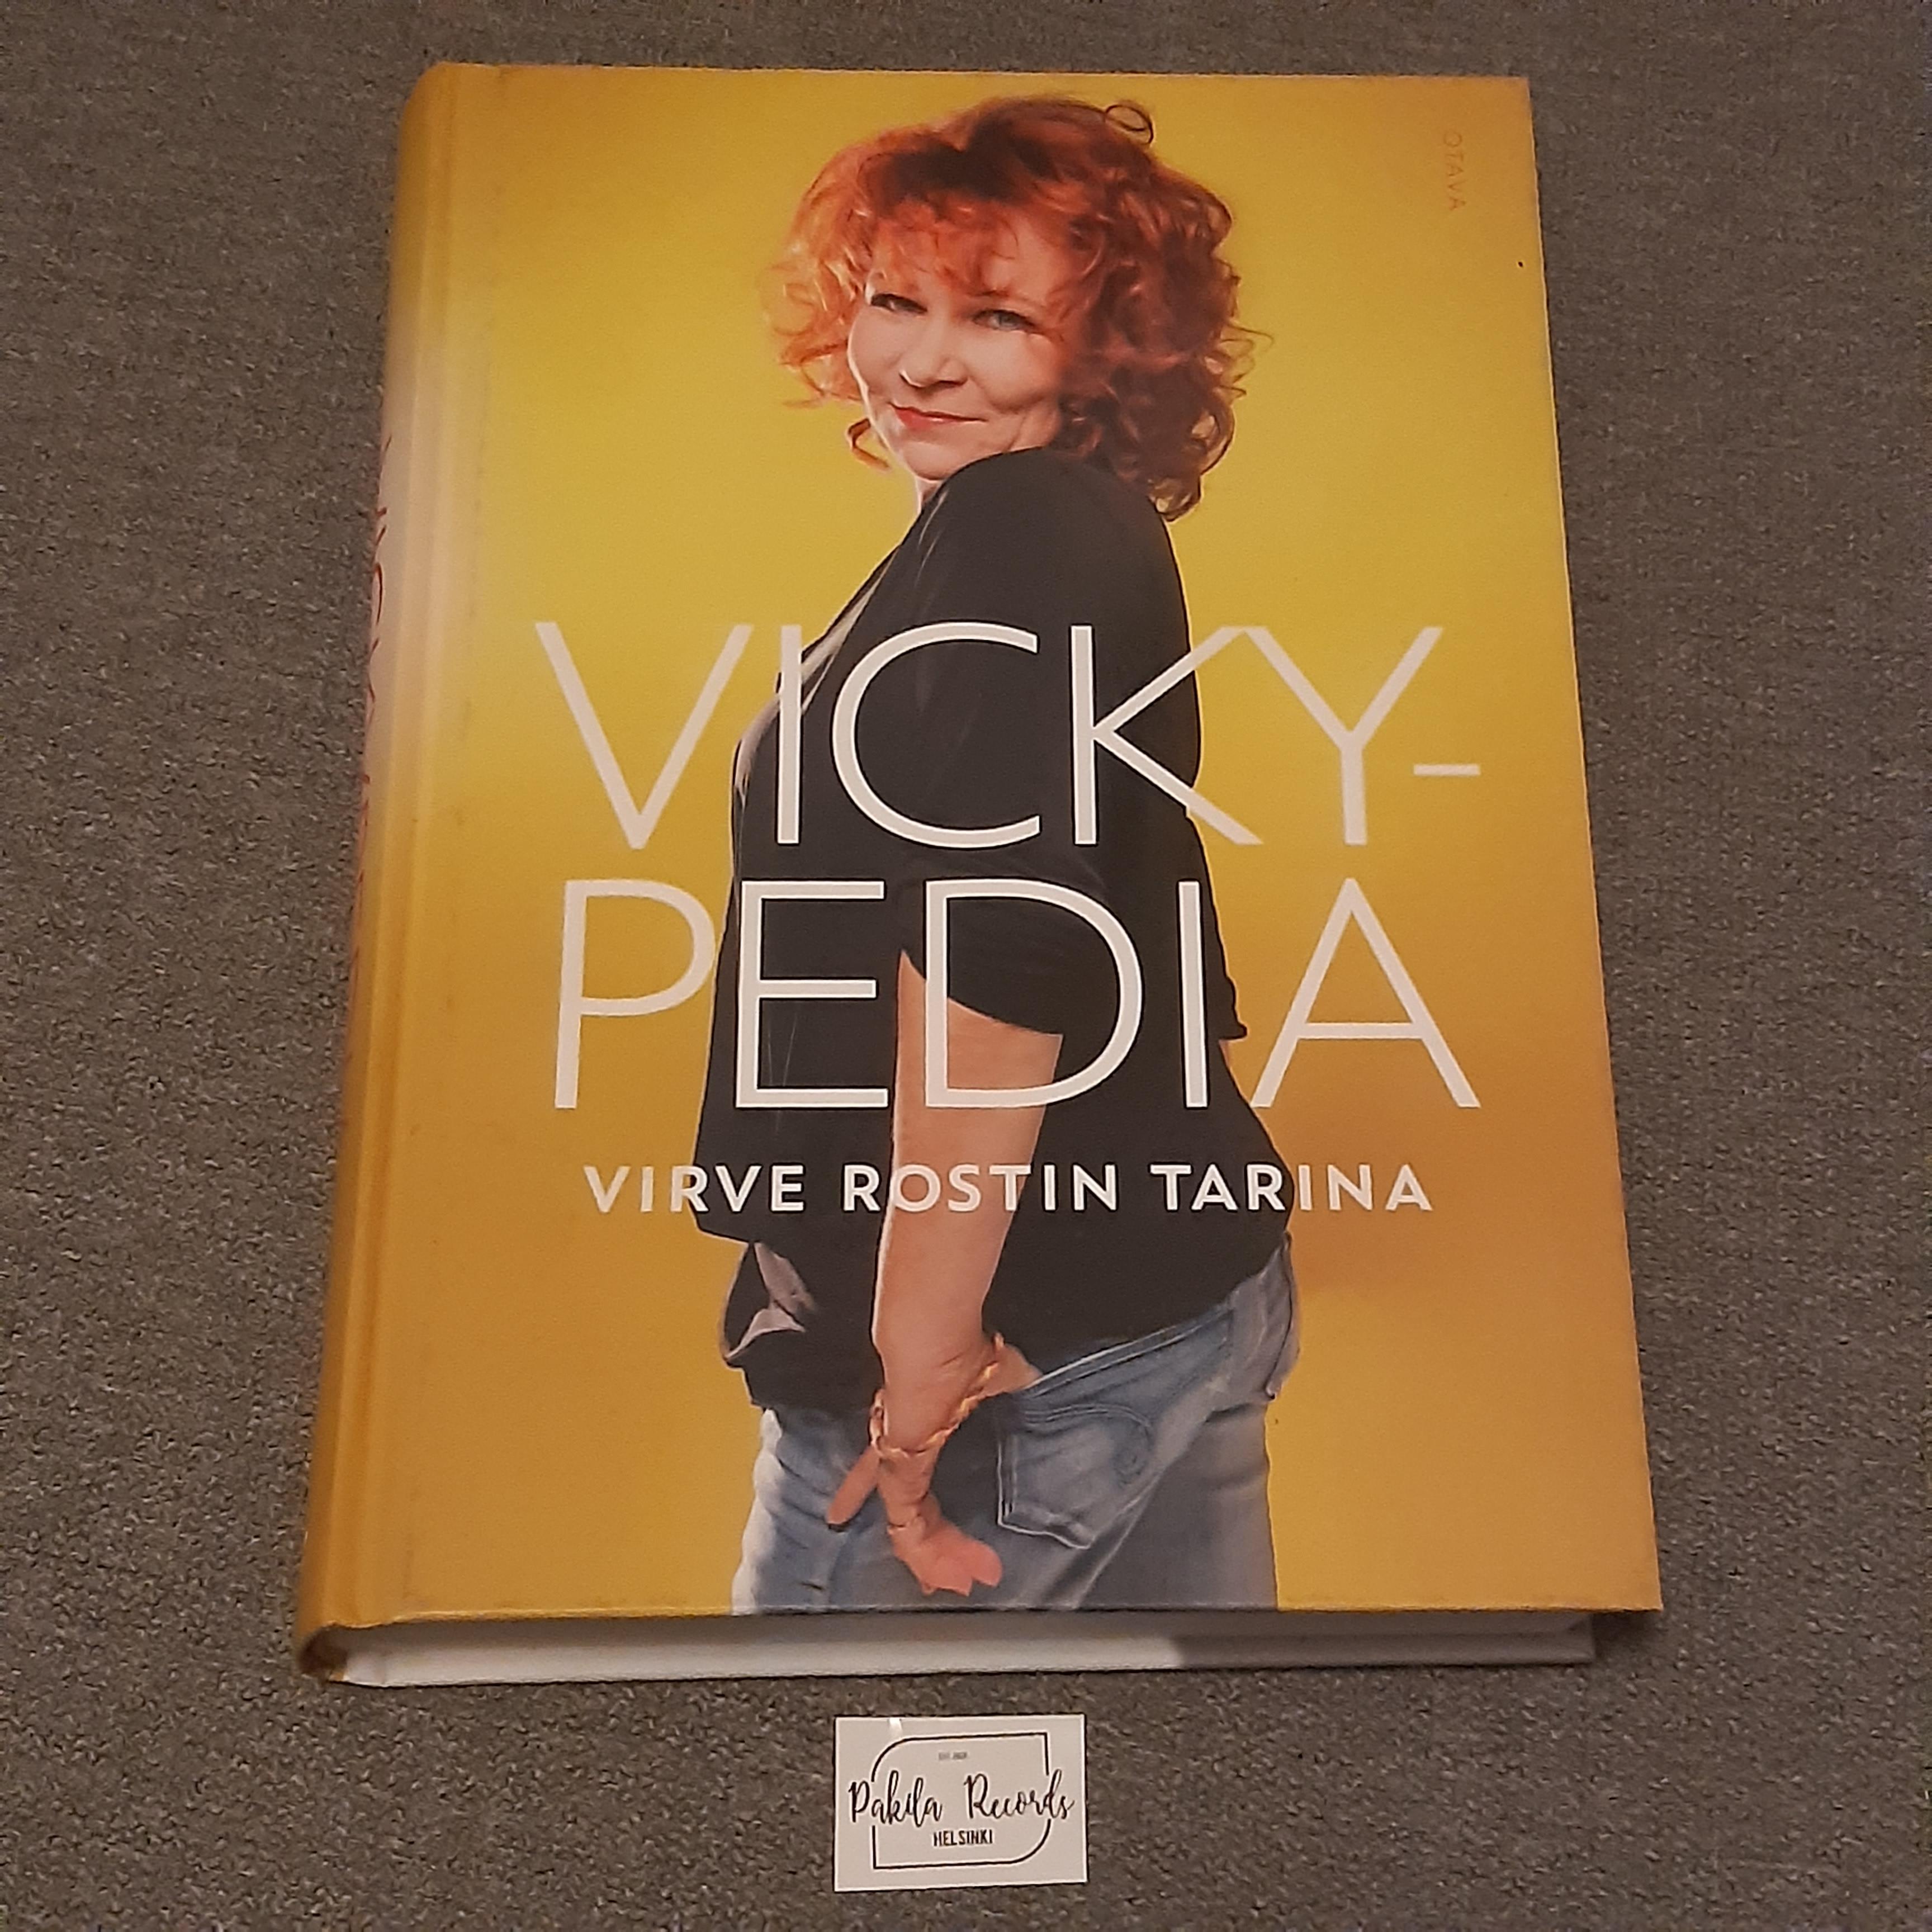 Vickypedia, Virve Rostin tarina - Kirja (käytetty)